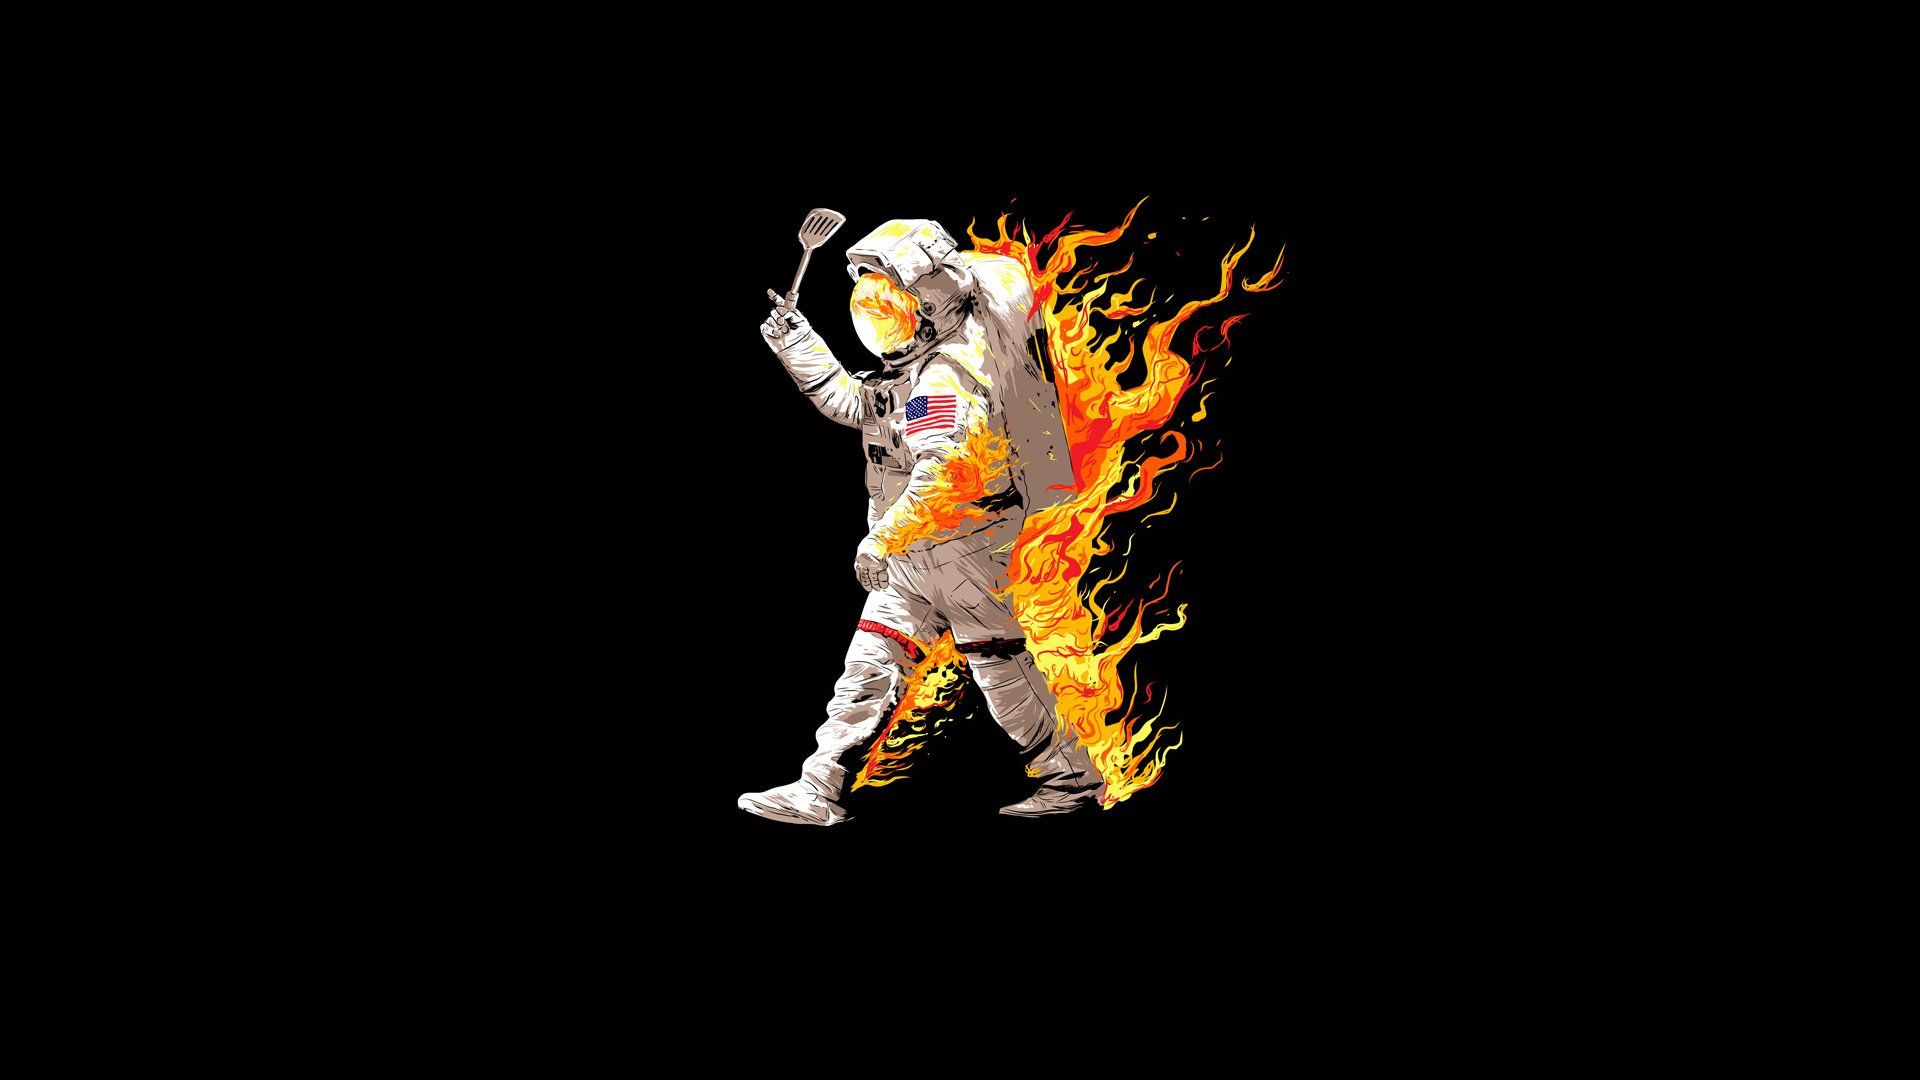 Fondos de pantalla de astronautas - FondosMil